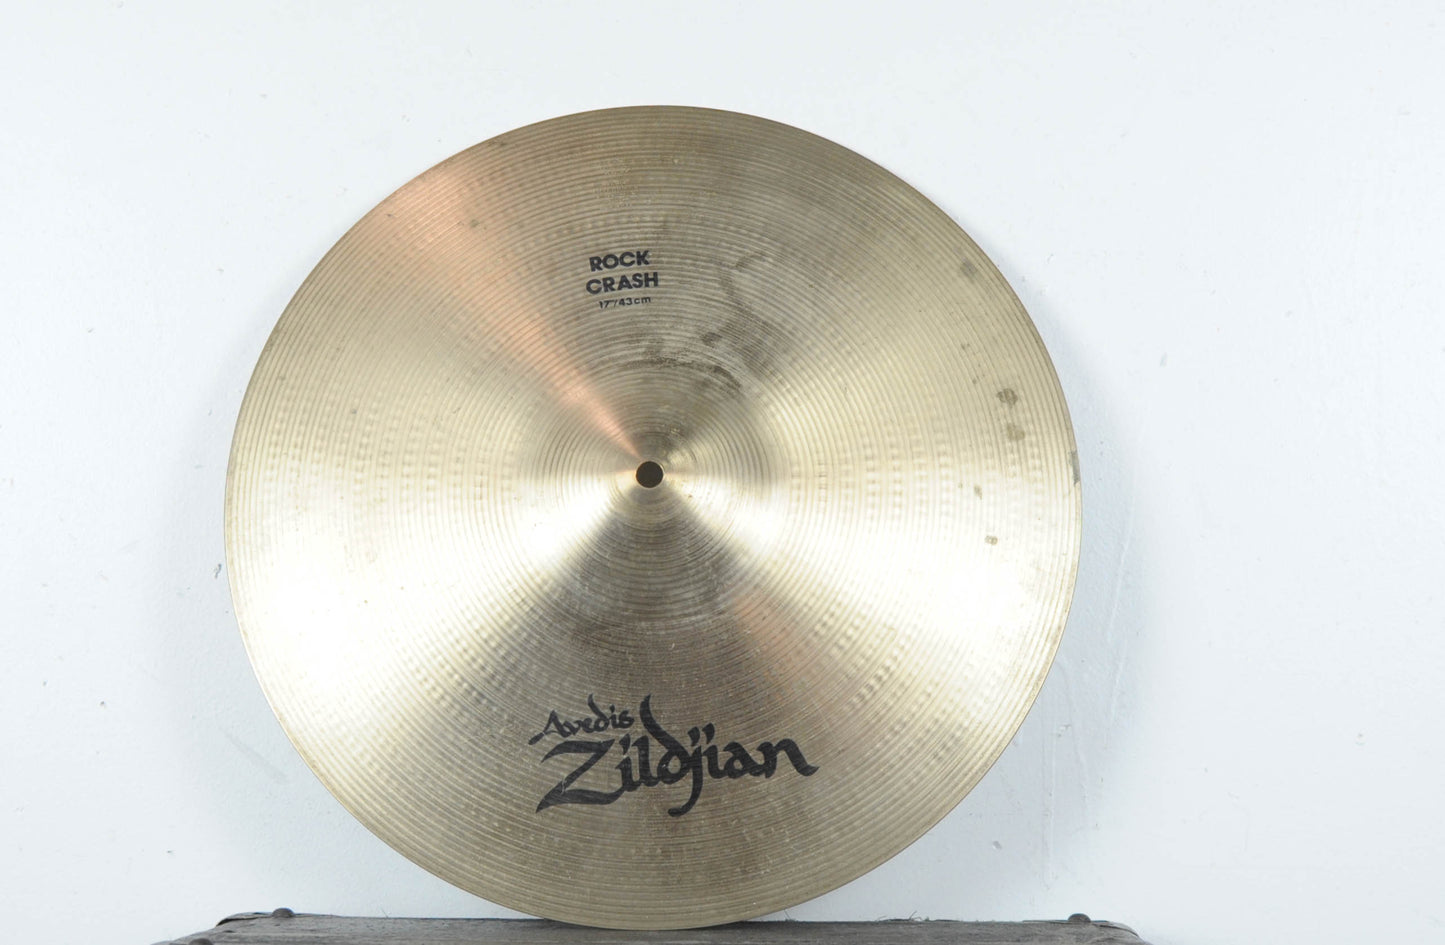 1990s Zildjian A 17" Rock Crash Cymbal 1564g